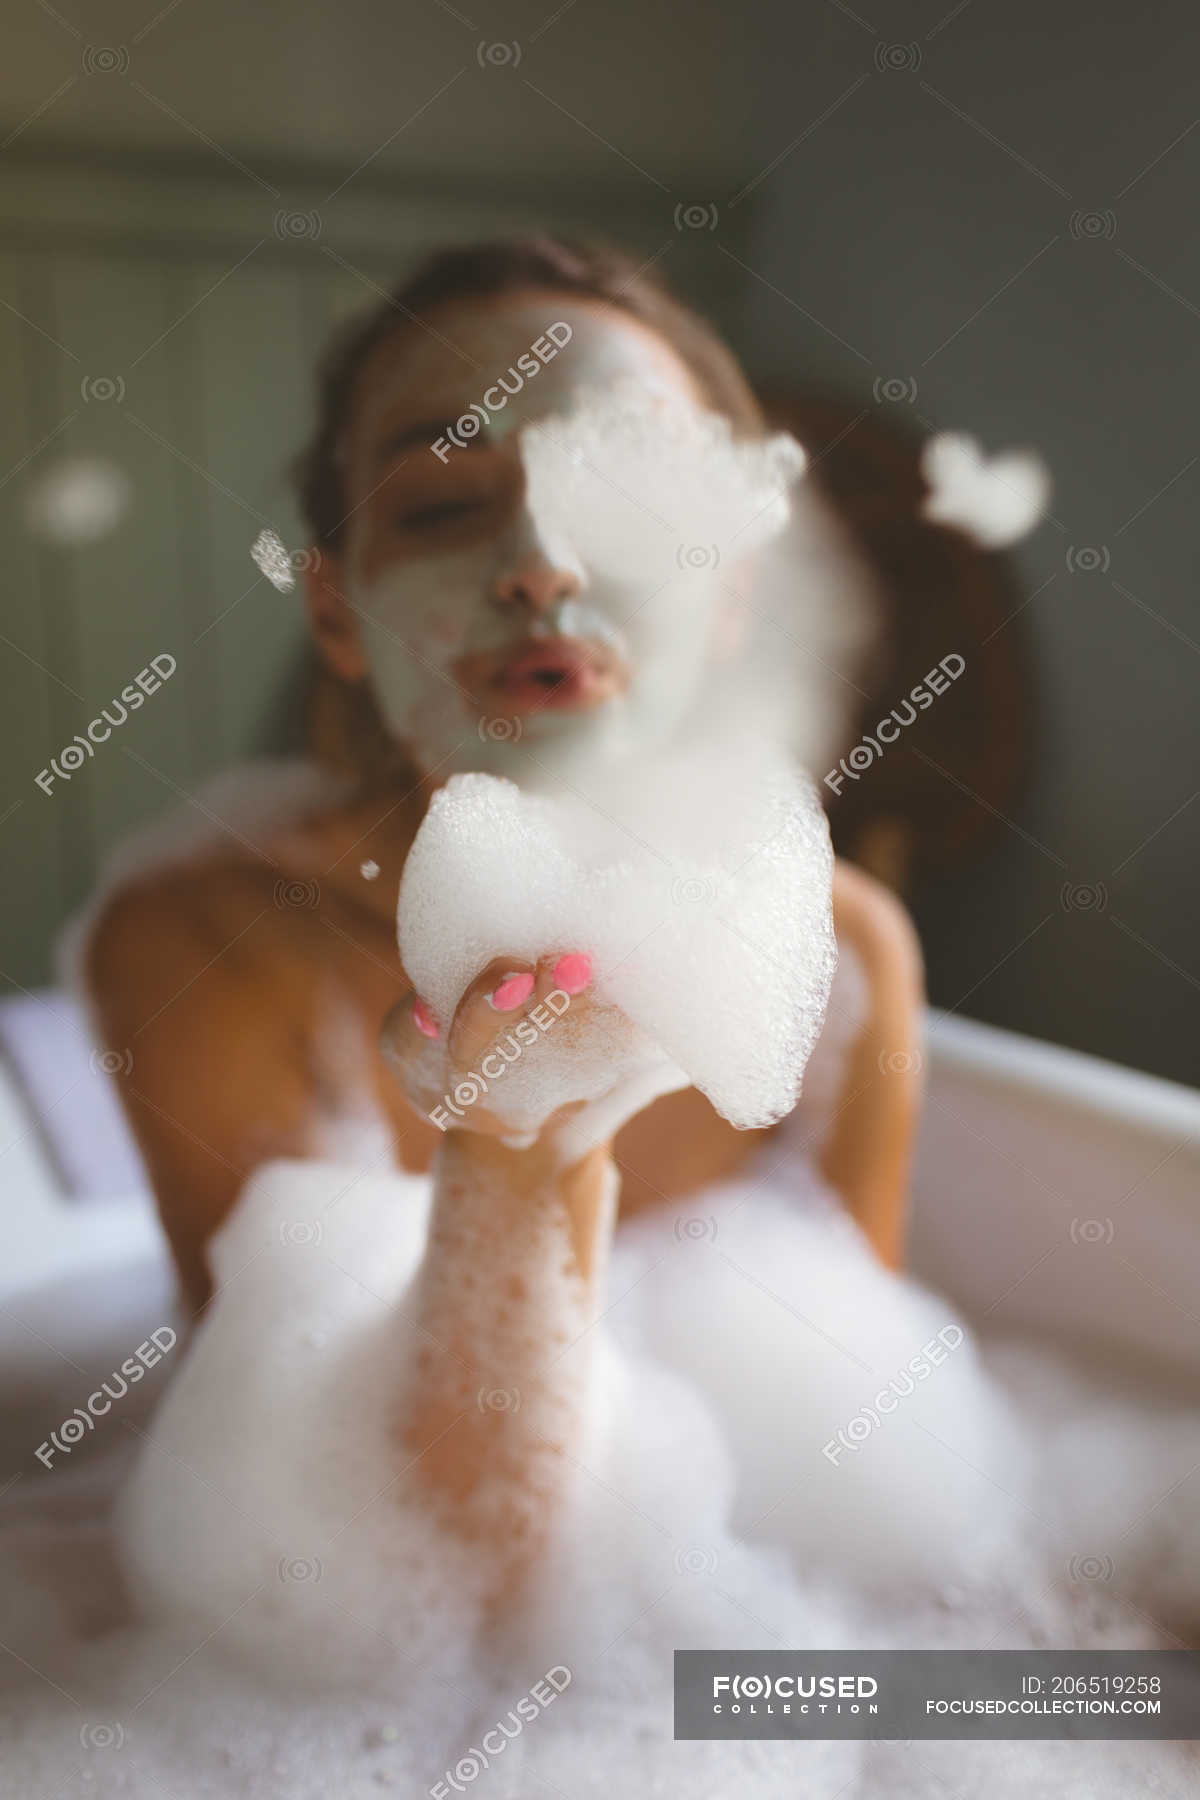 Дамочка в ванной с пенкой